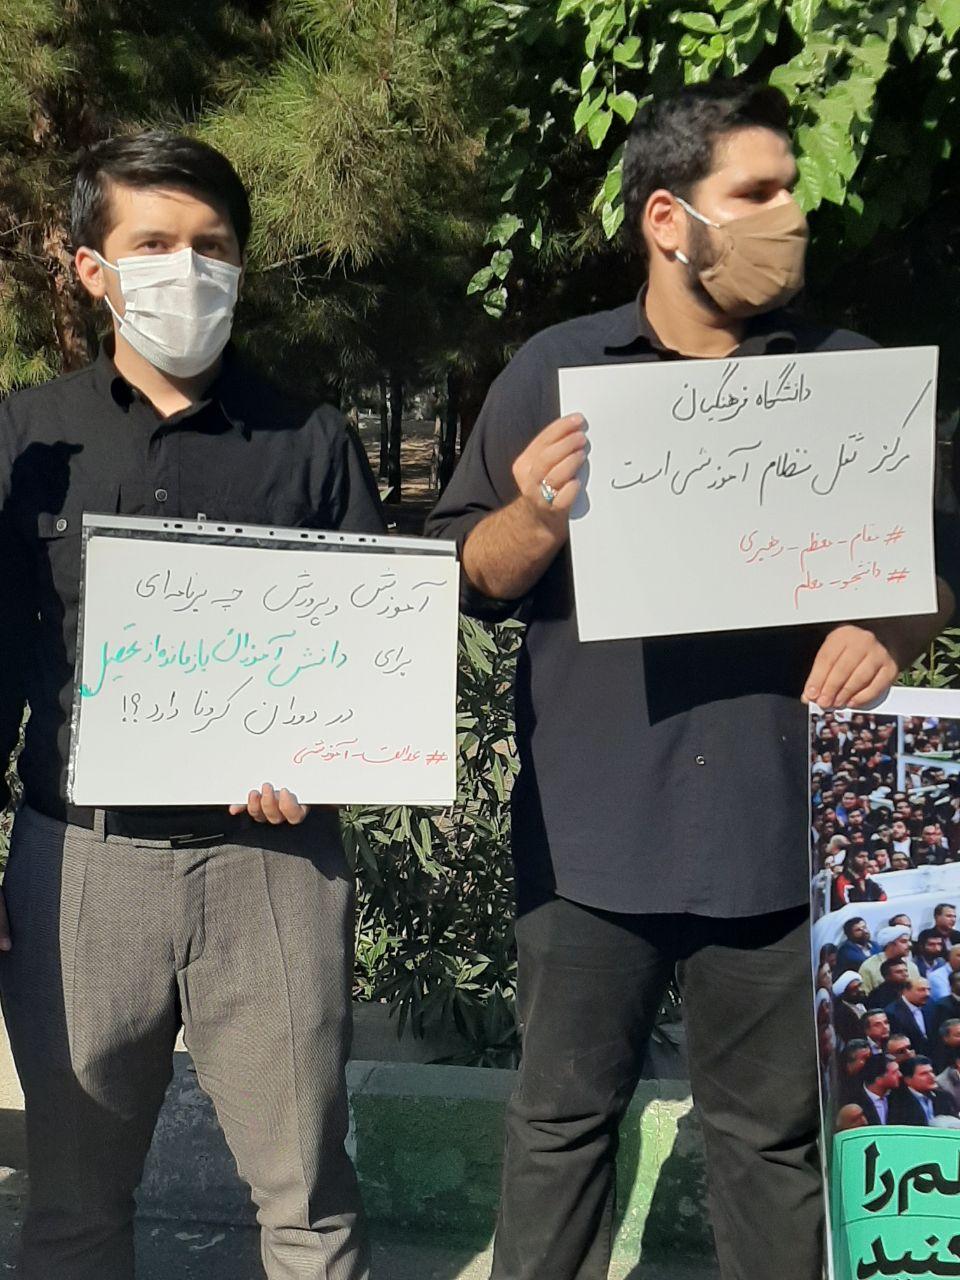 تجمع اعتراضی دانشجویان دانشگاه فرهنگیان همزمان با حضور وزیر آموزش و پرورش در این دانشگاه